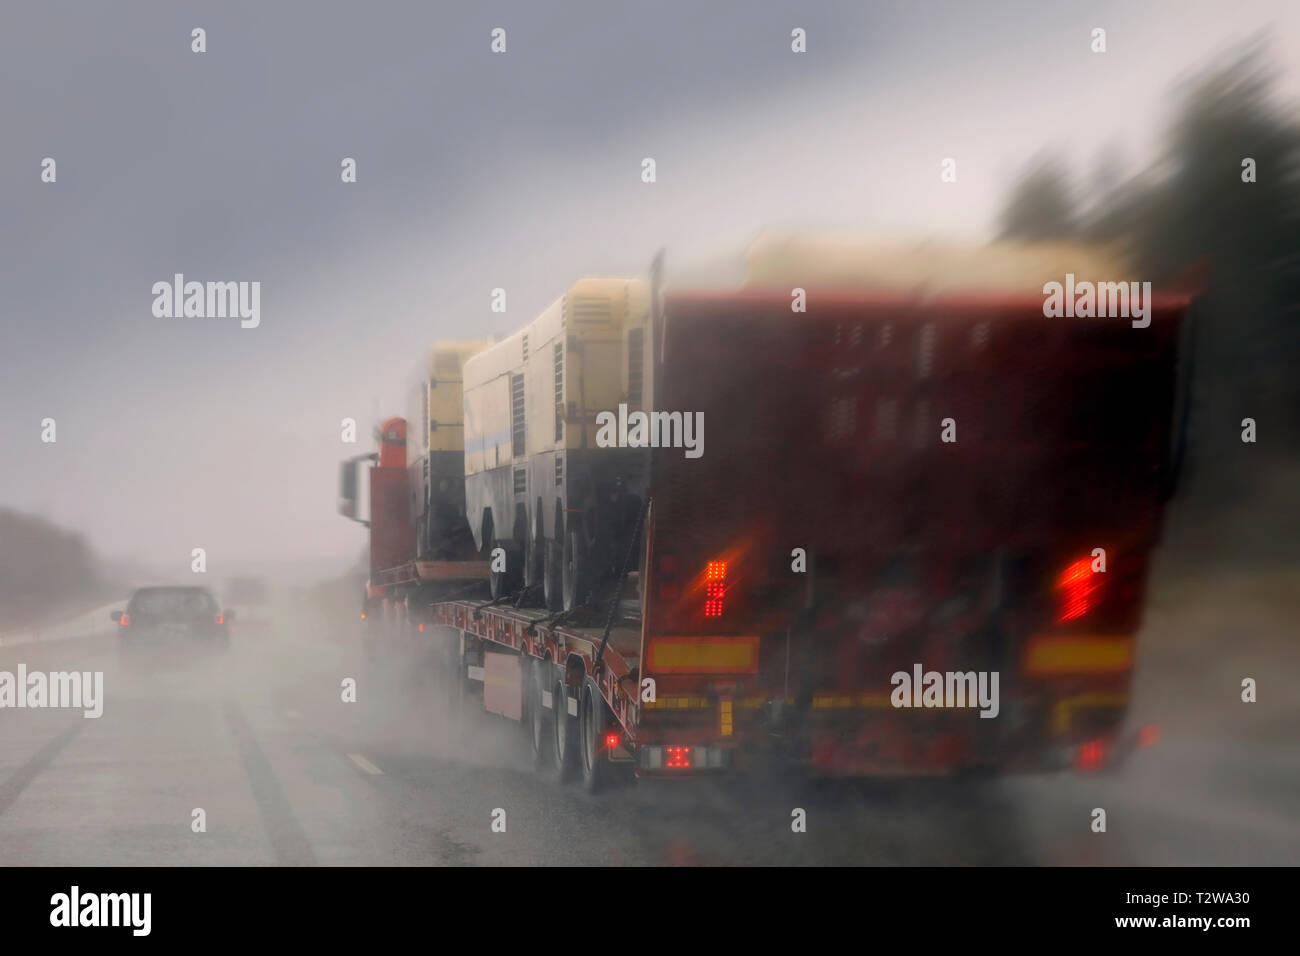 La guida lungo l'autostrada in pioggia e passando un semi carrello con un carico di macchinari, di spruzzi di acqua piovana, vista offuscata. Foto Stock